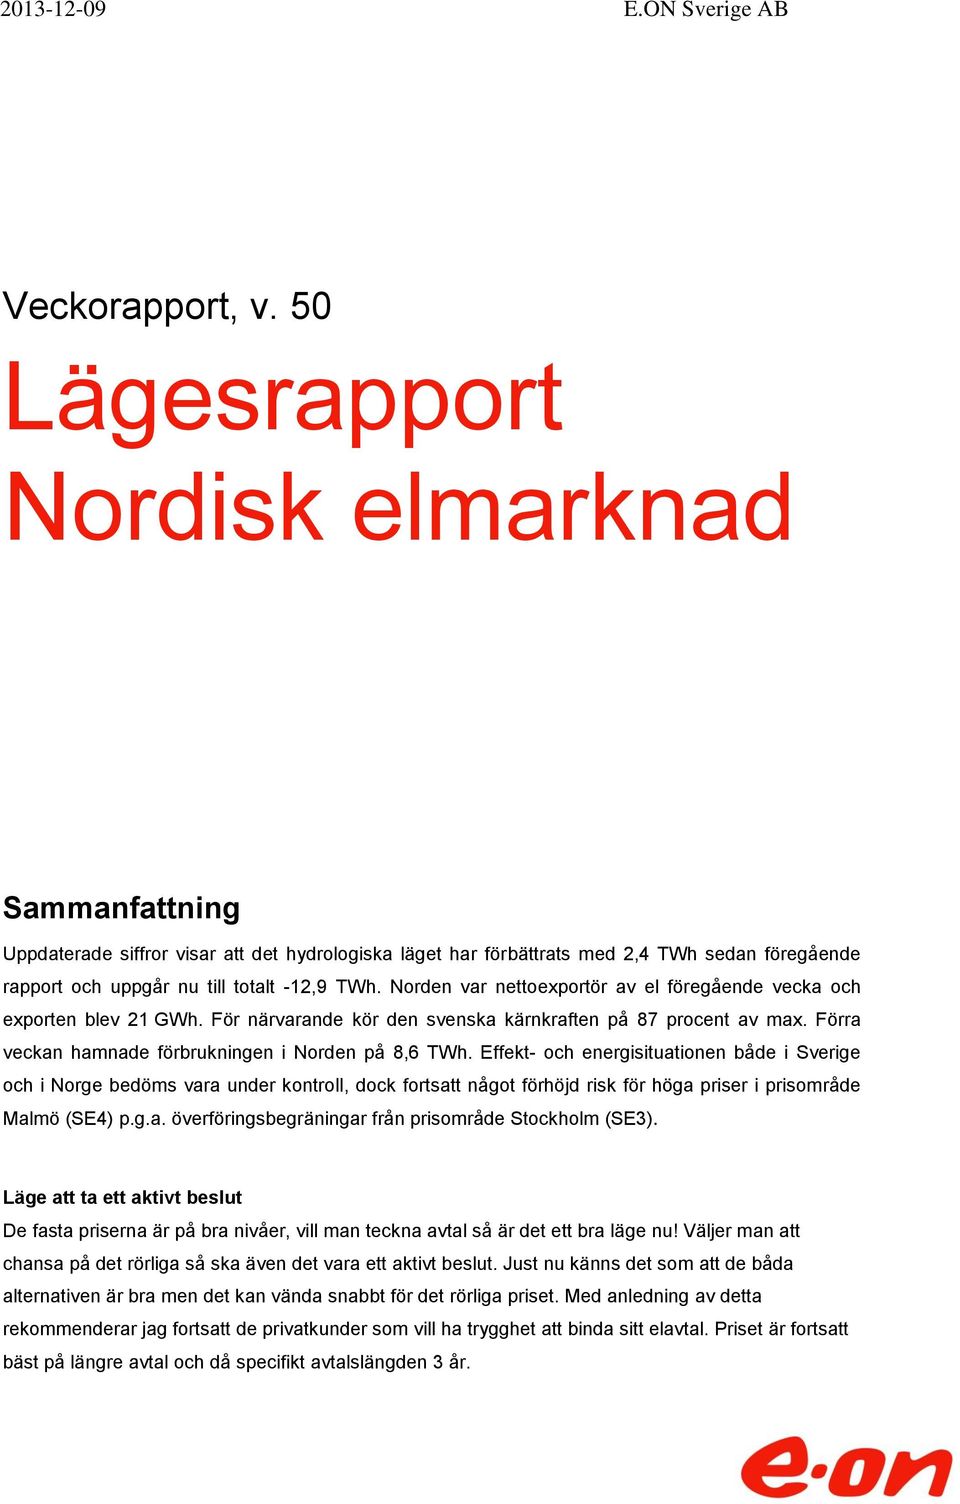 Norden var nettoexportör av el föregående vecka och exporten blev 21 GWh. För närvarande kör den svenska kärnkraften på 87 procent av max. Förra veckan hamnade förbrukningen i Norden på 8,6 TWh.